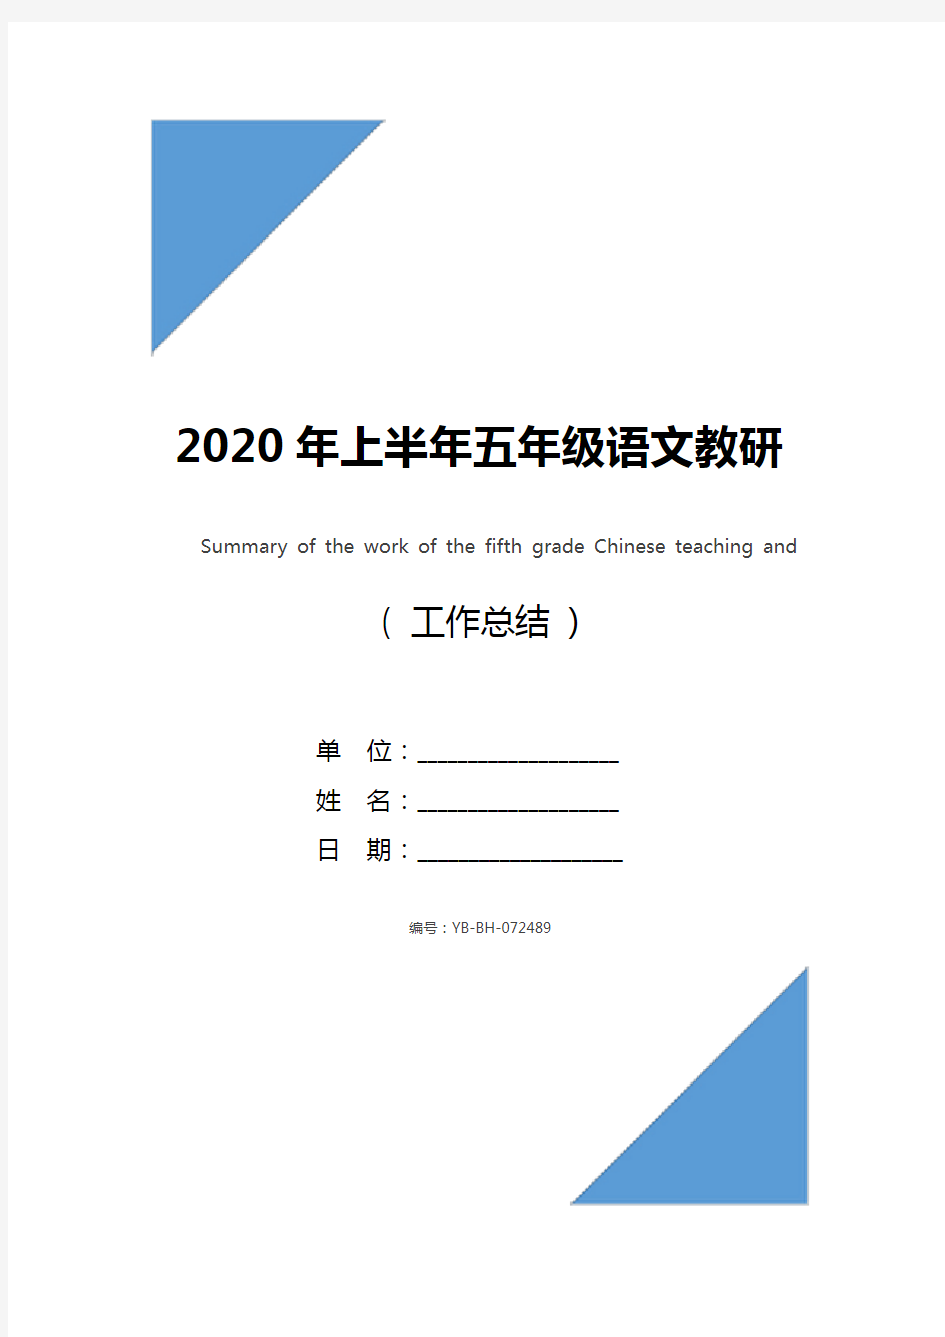 2020年上半年五年级语文教研组工作总结